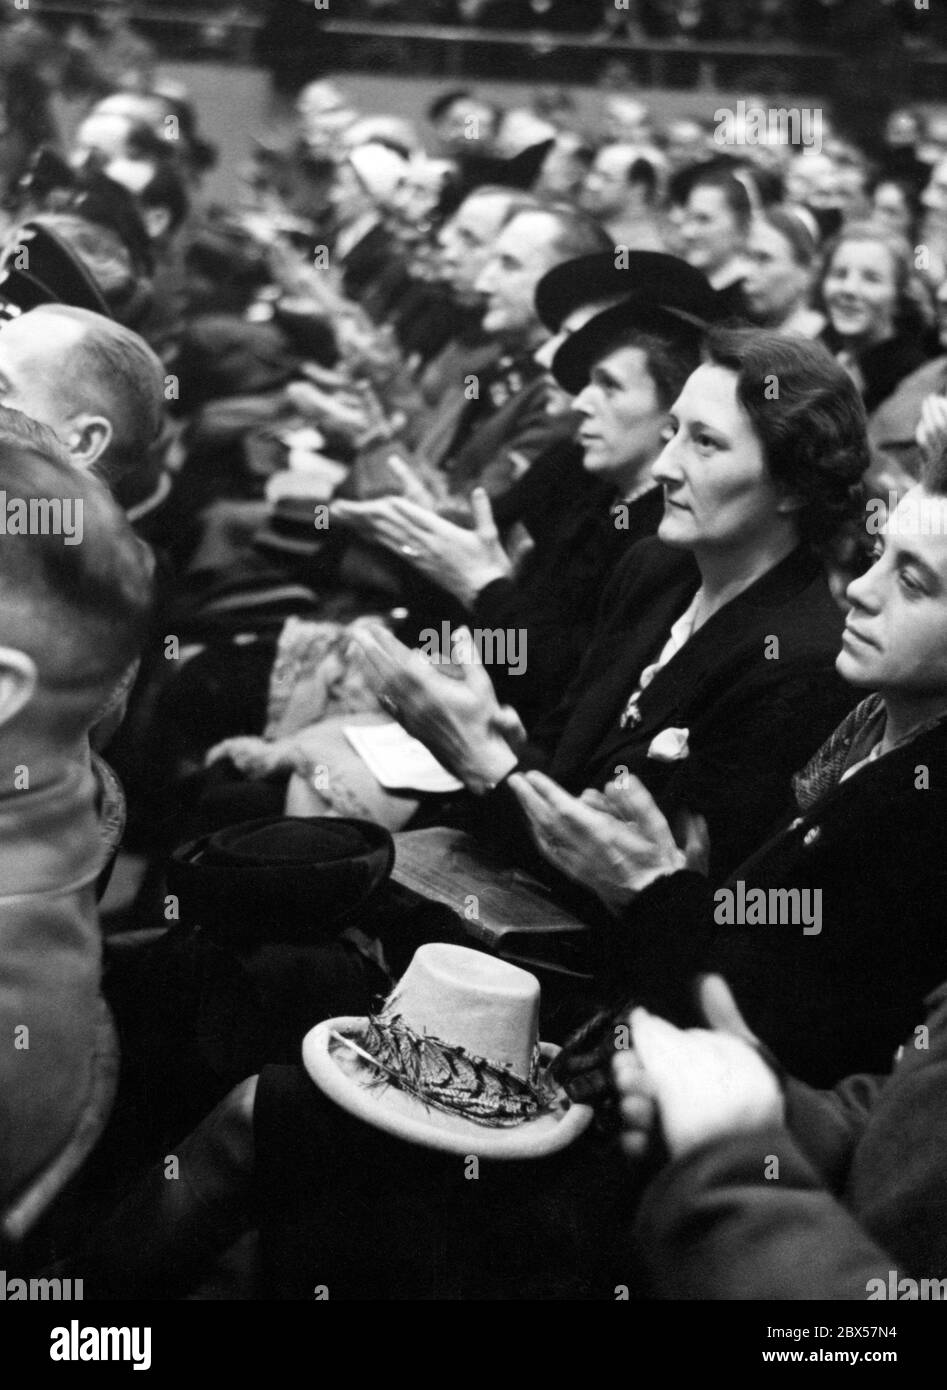 Das Publikum applaudiert nach der demagogischen Rede des Reichspropagandaministers Goebbels mit den berühmten Worten "Willst du totalen Krieg?". Foto: Schwahn Stockfoto